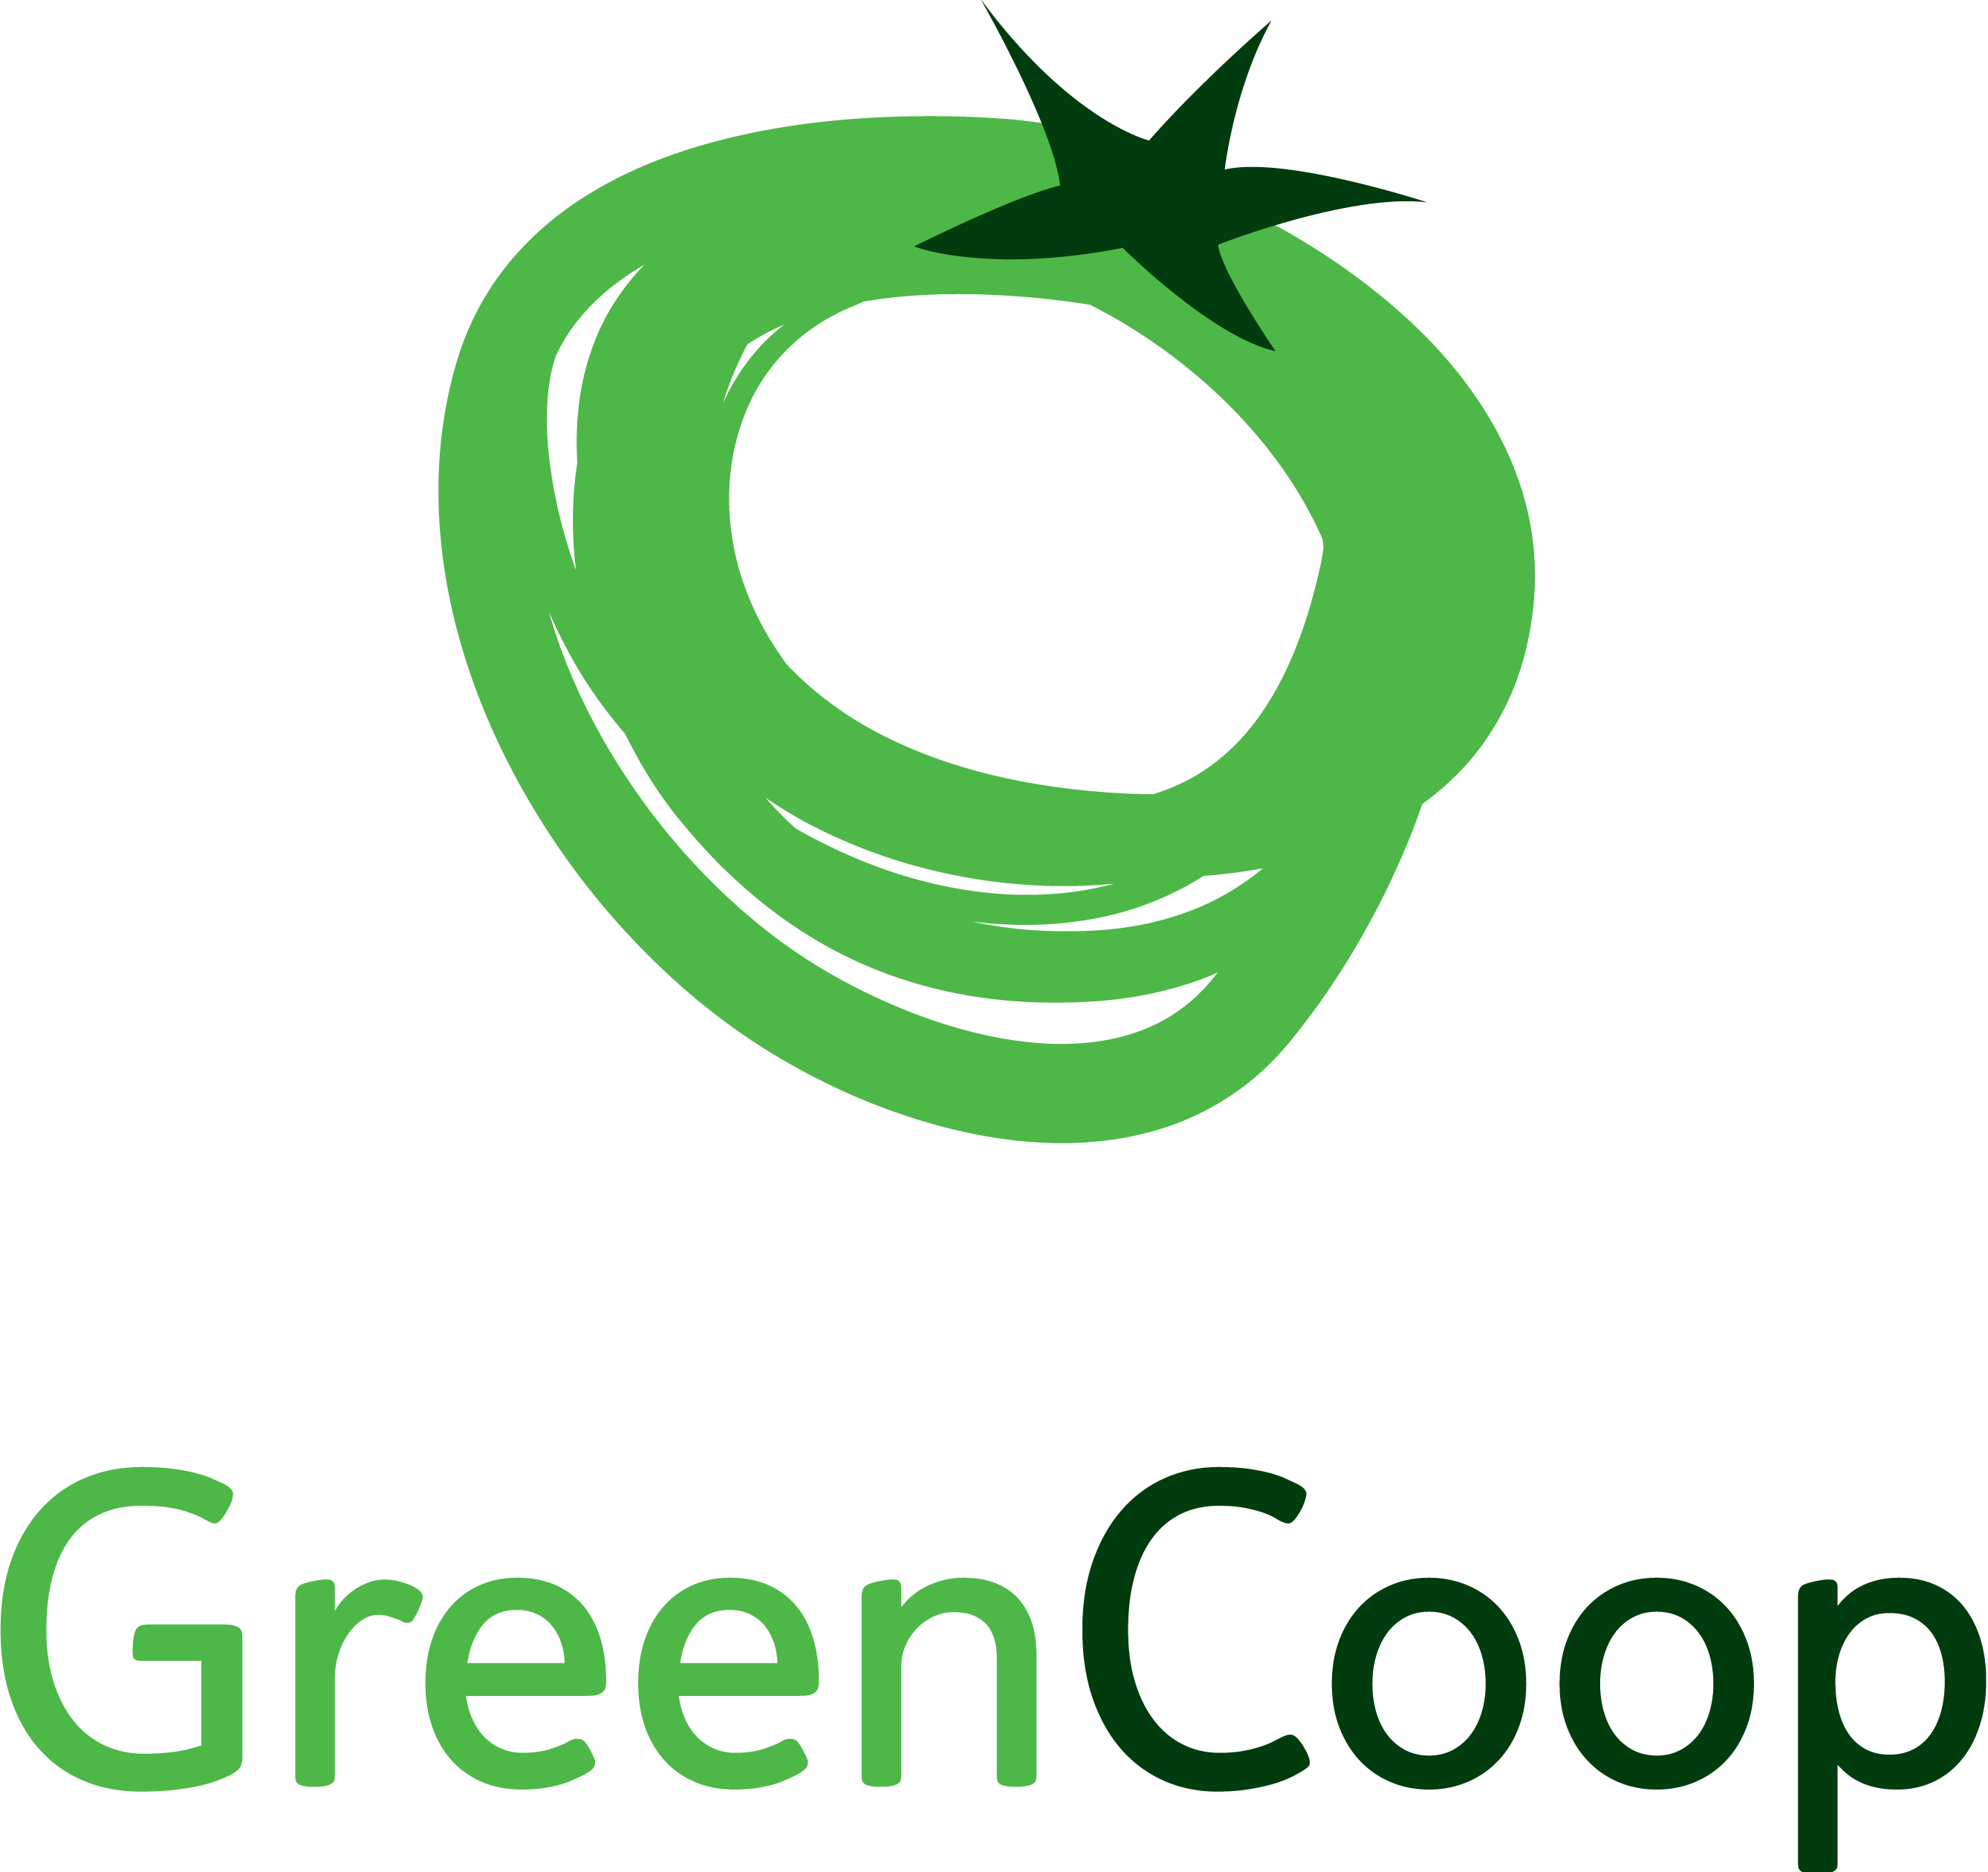 Green Coop logo B